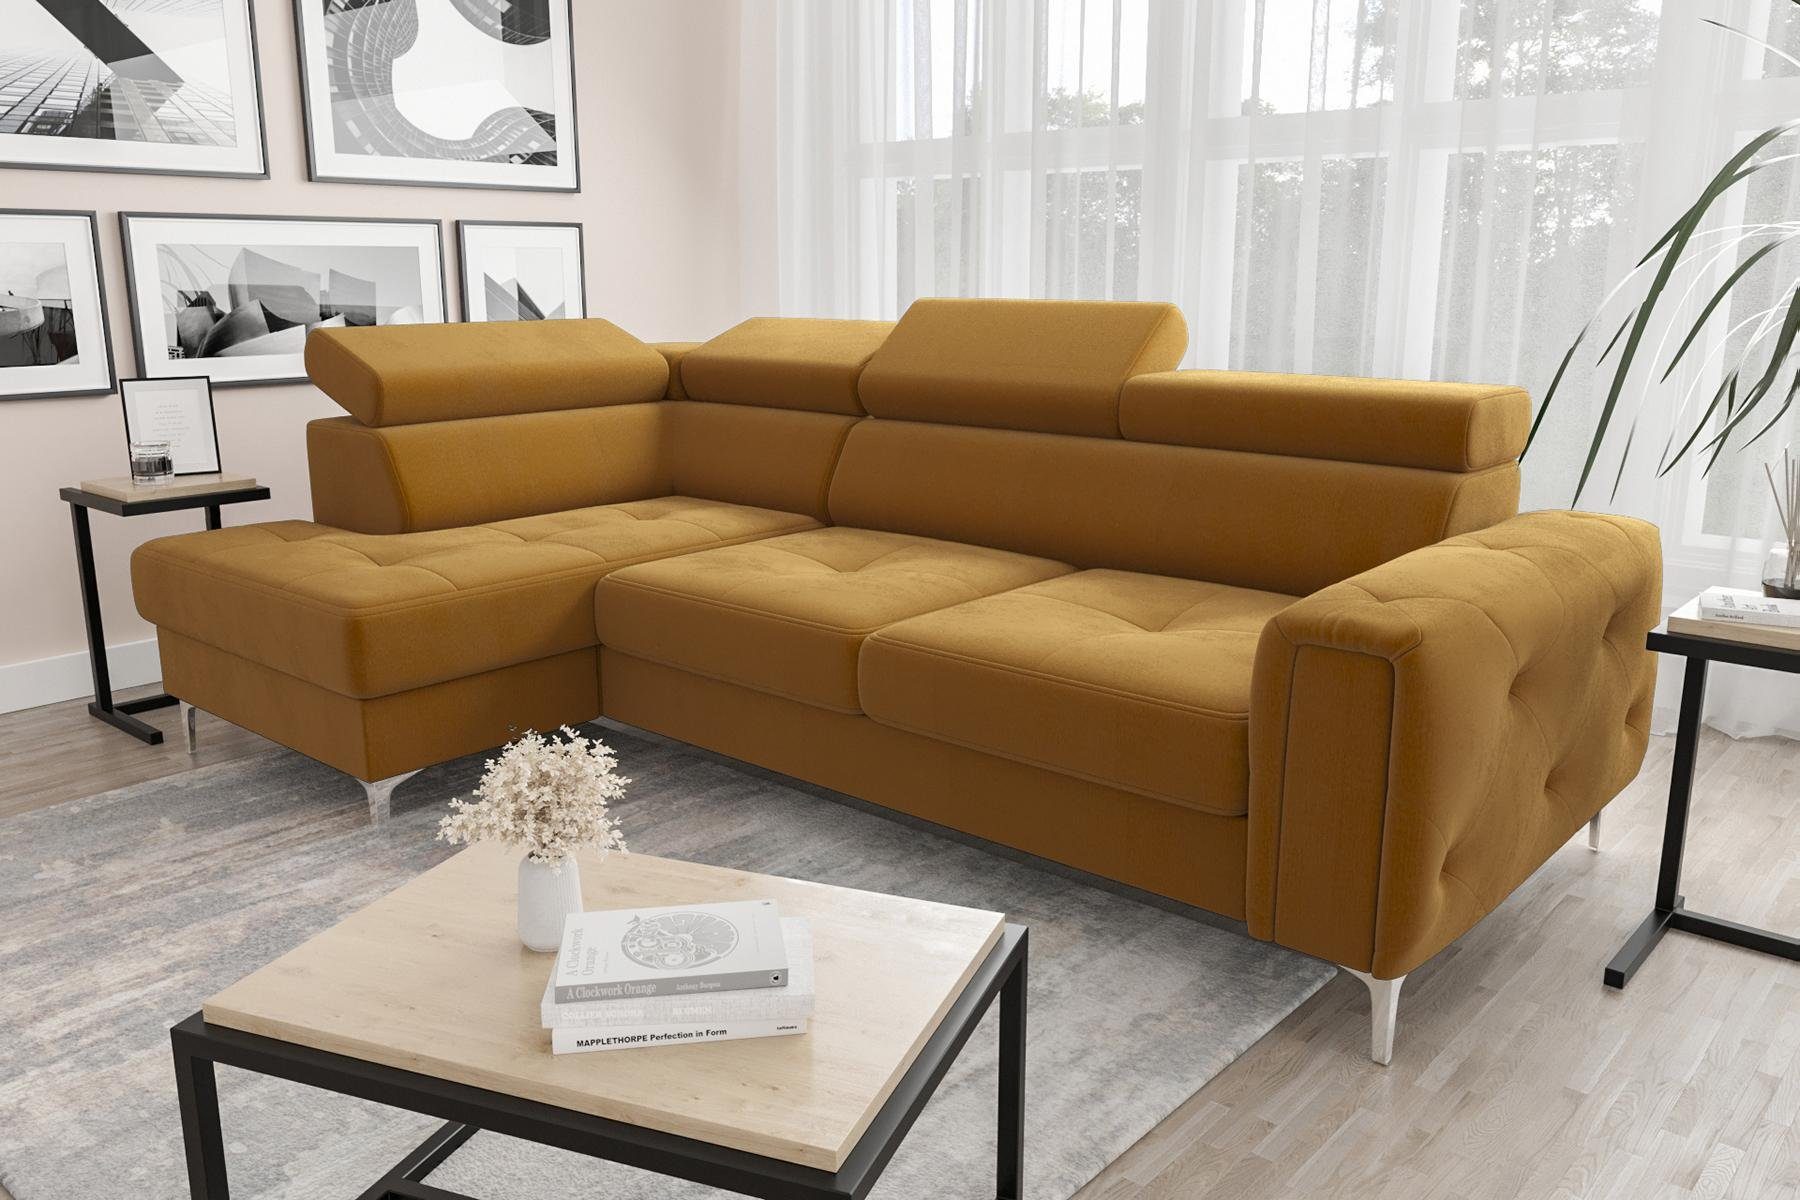 Design, JVmoebel in Gelb Ecksofa Made Ecke Wohnzimmer L-Form Couch Europe Ledersofa